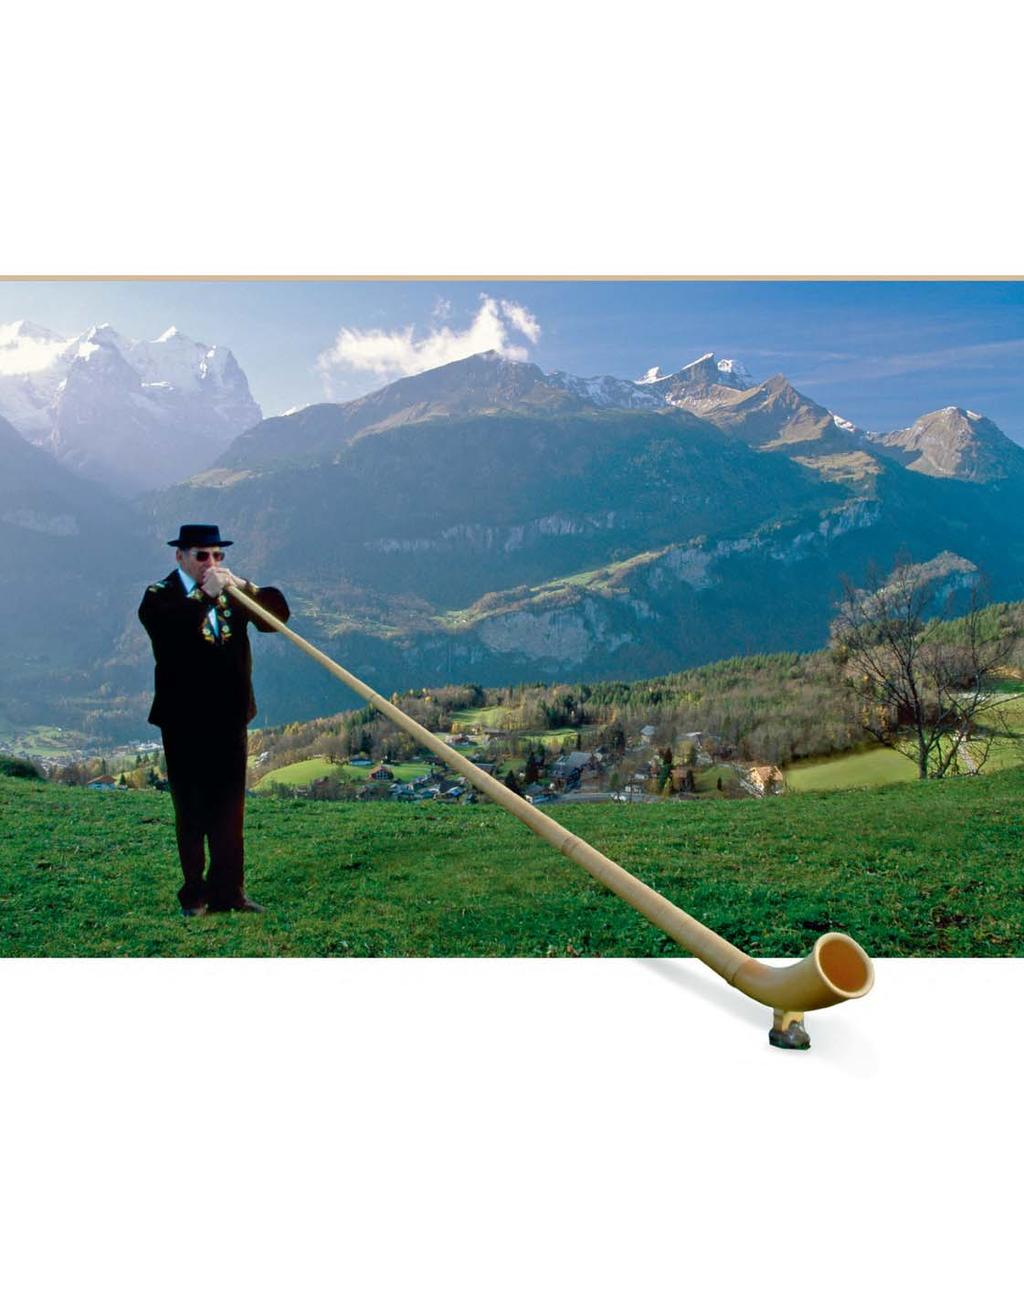 Die alpehoring Musiek uit die berge PARTY bewoners van die Switserse Alpe gebruik al eeue lank n unieke instrument om te kommunikeer die alpehoring.